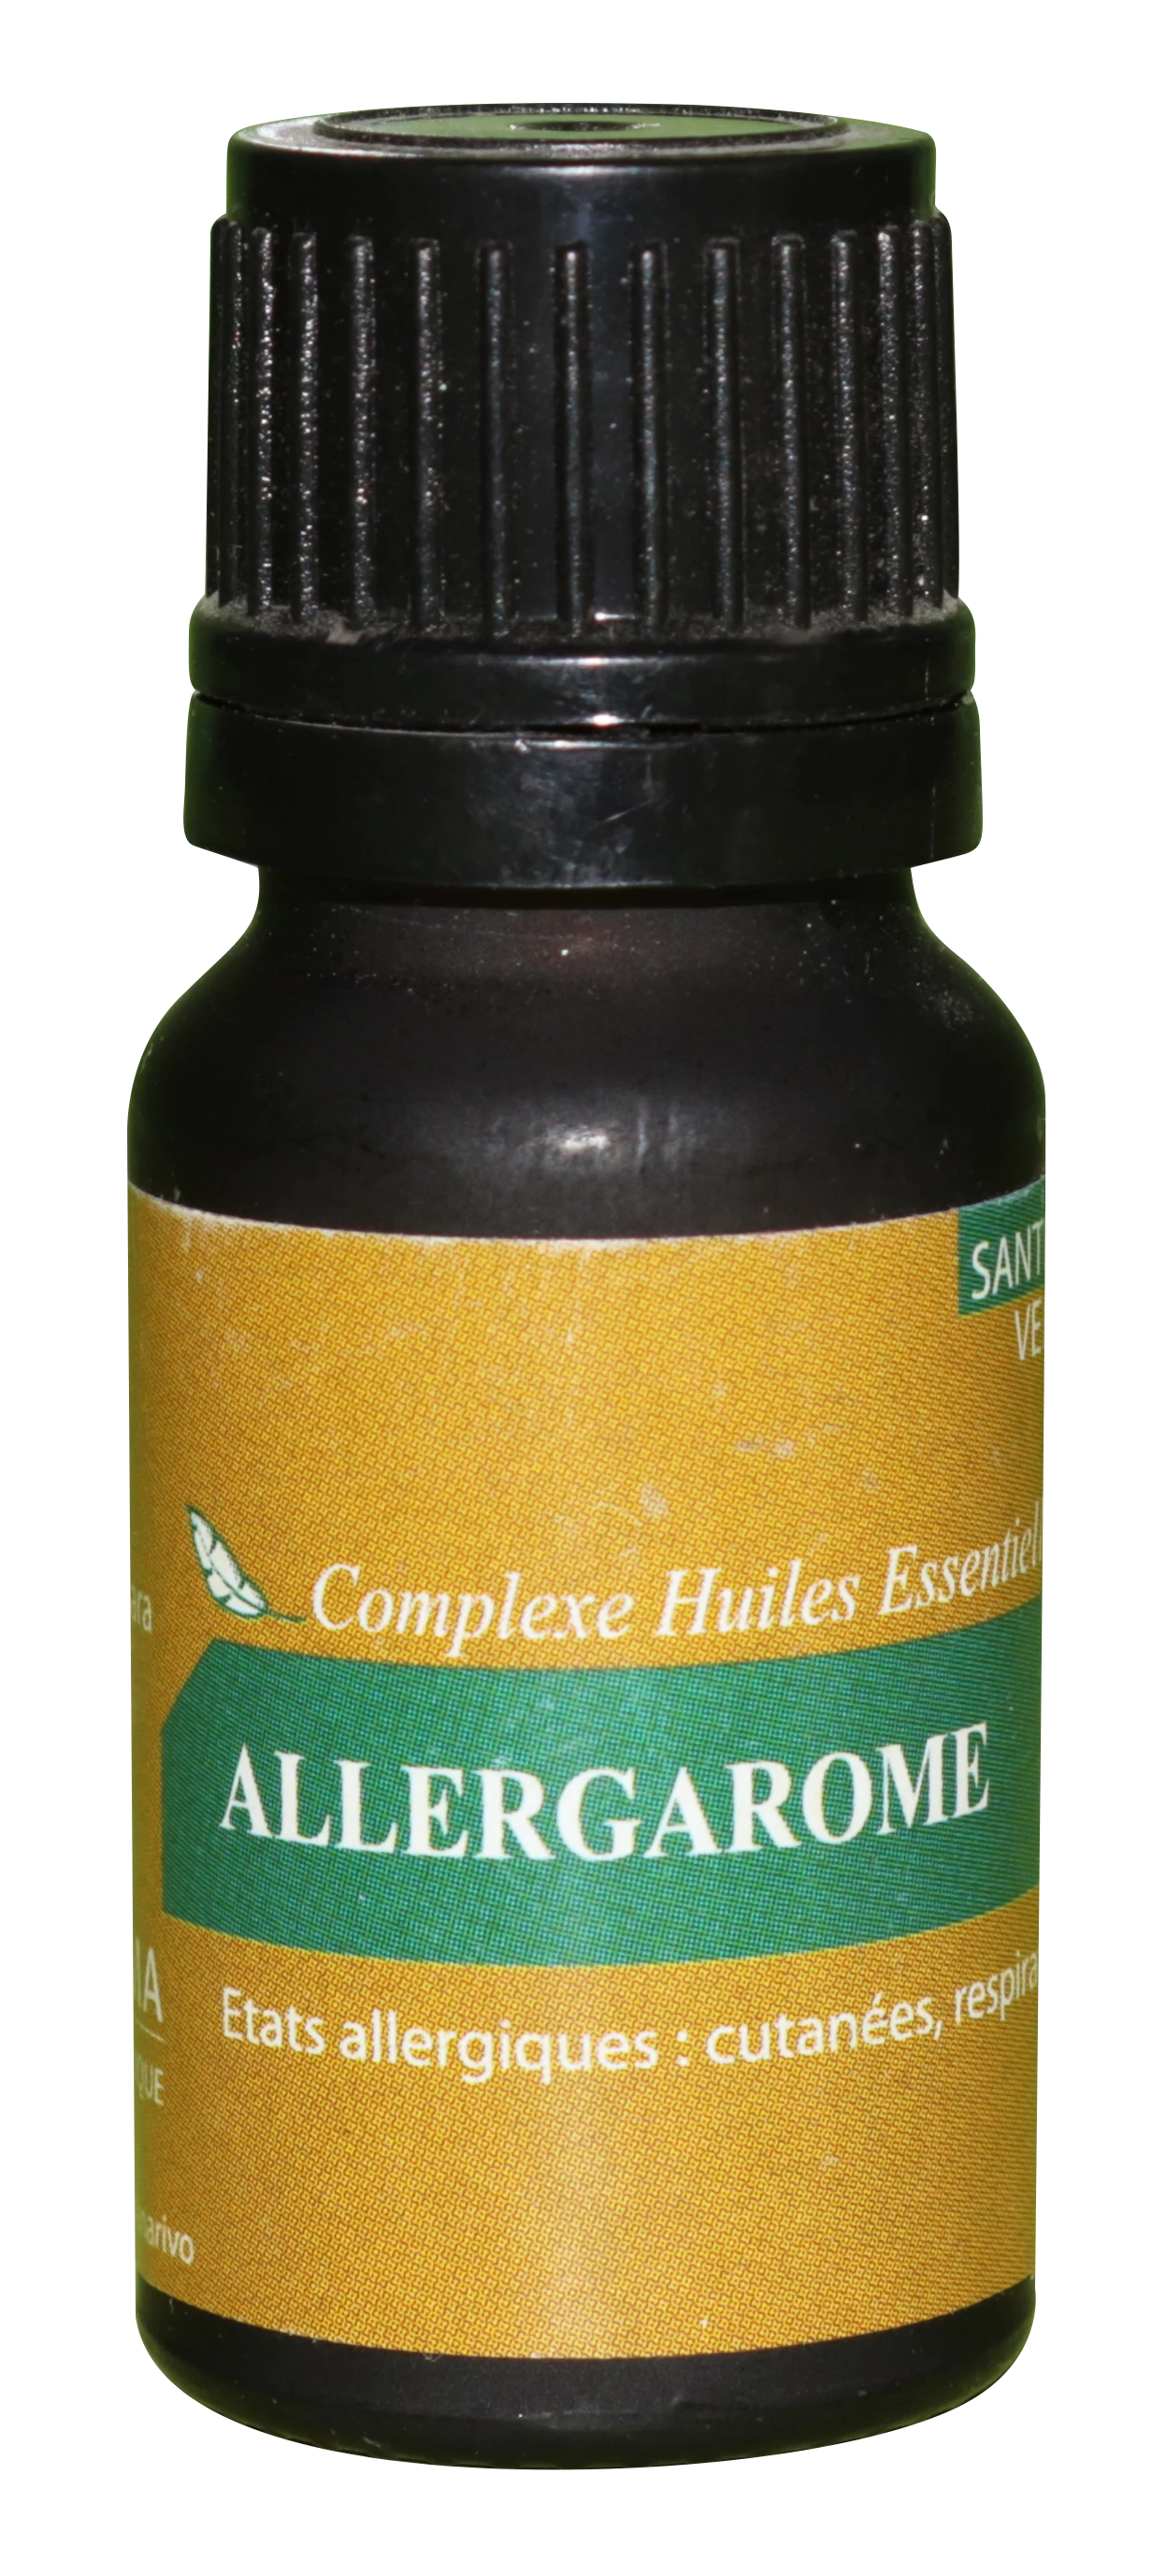 Complessi di olio essenziale di allergarome 10 ml - HOMEOPHARMA